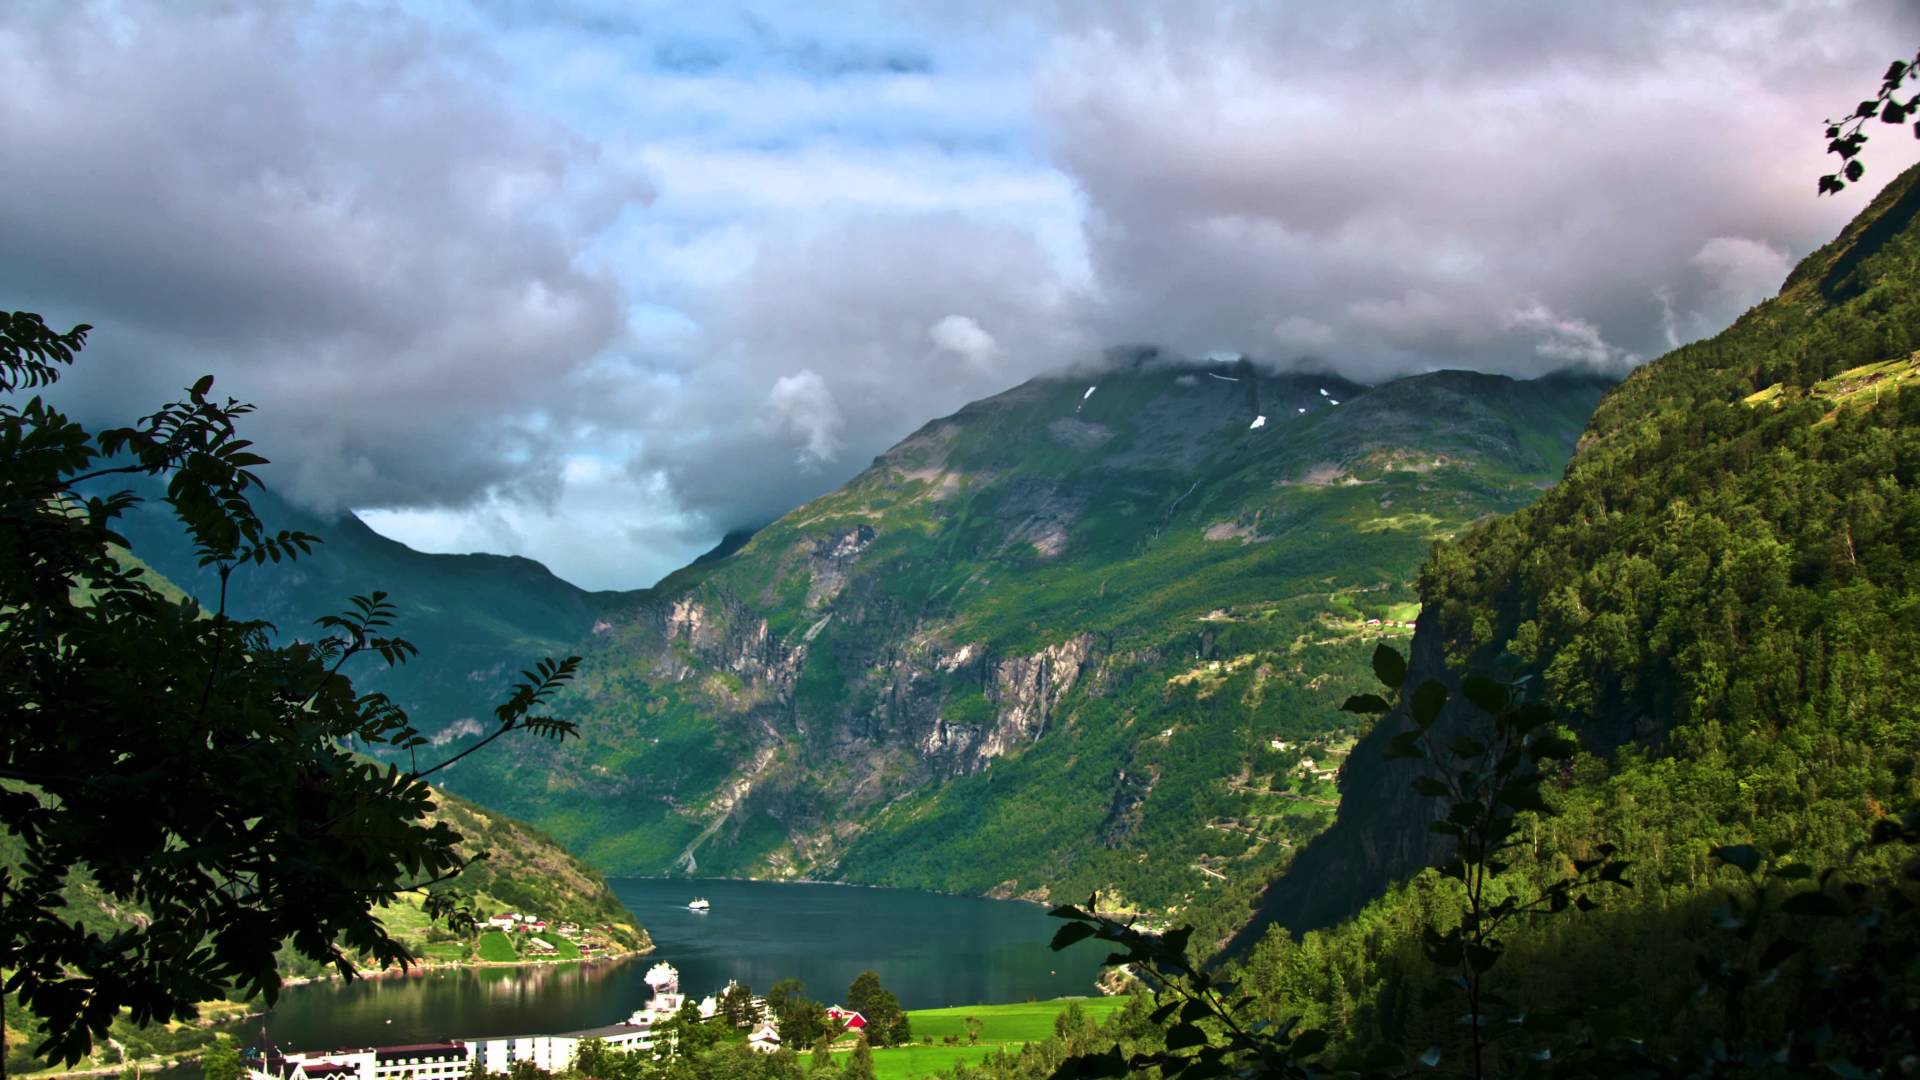 Descarga gratuita de fondo de pantalla para móvil de Naturaleza, Montaña, Bosque, Noruega, Nube, Fiordo, Tierra/naturaleza, Gerainger.